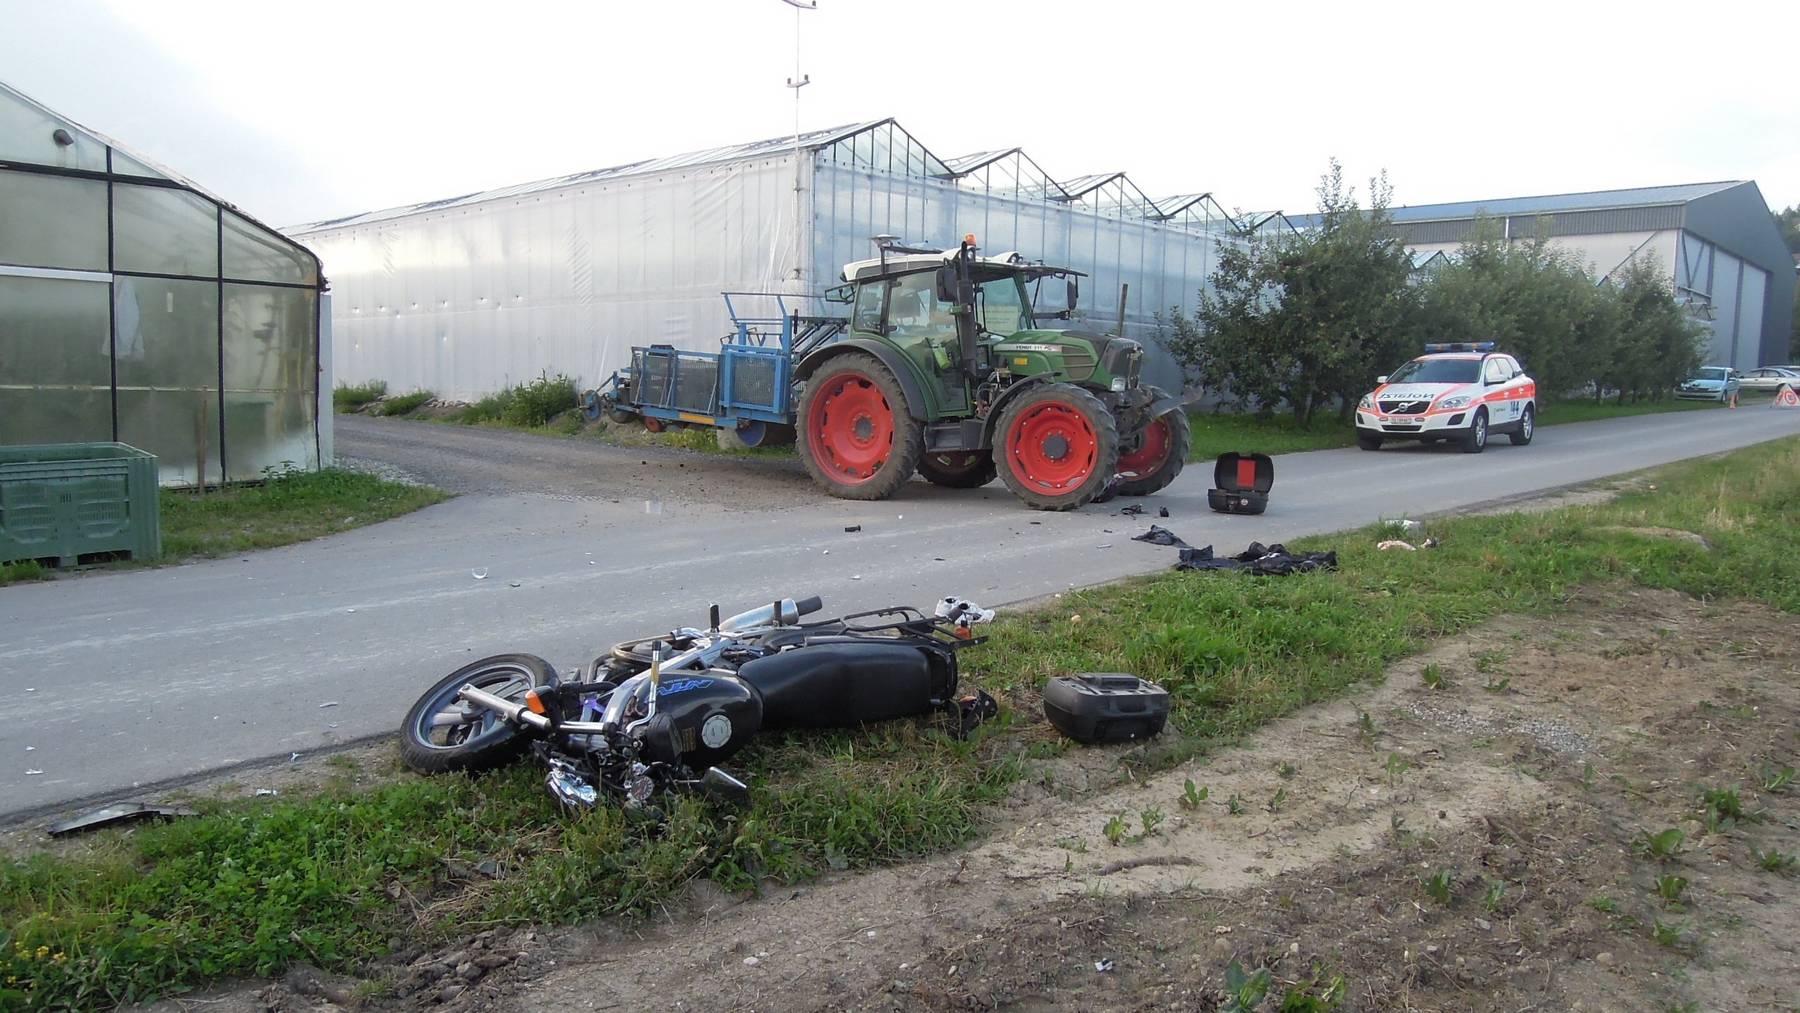 Der Motorradfahrer kollidierte seitlich mit dem Traktor und stürzte.